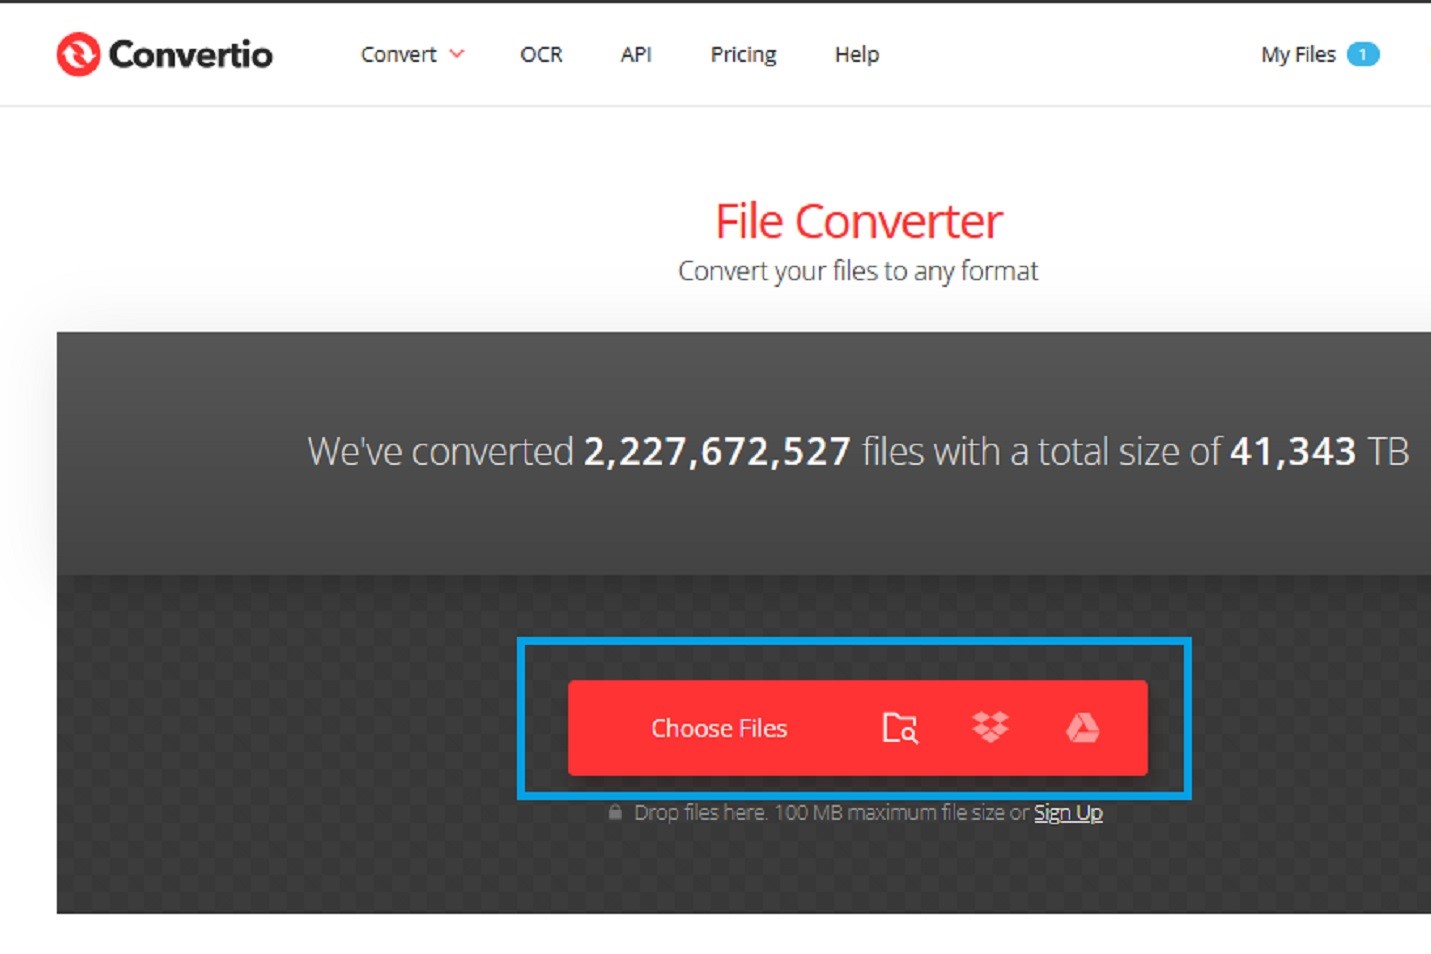 گزینه Choose files on the Convertio website را انتخاب کنید.